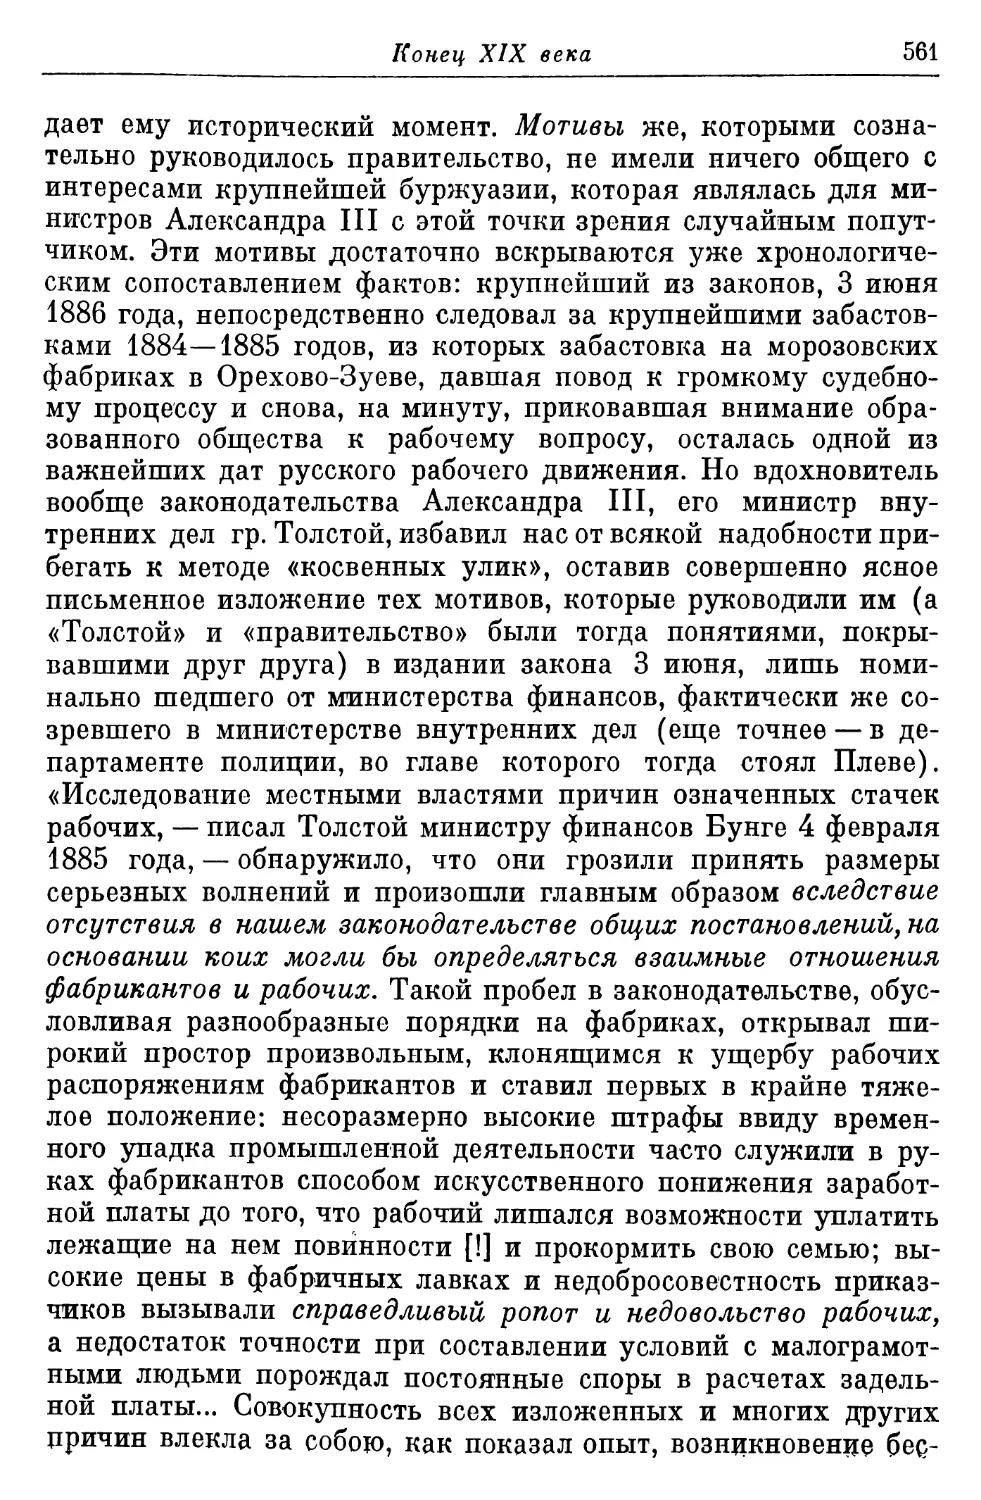 Рабочее движение и реакция 80-х годов; фабричное законодательство Александра III